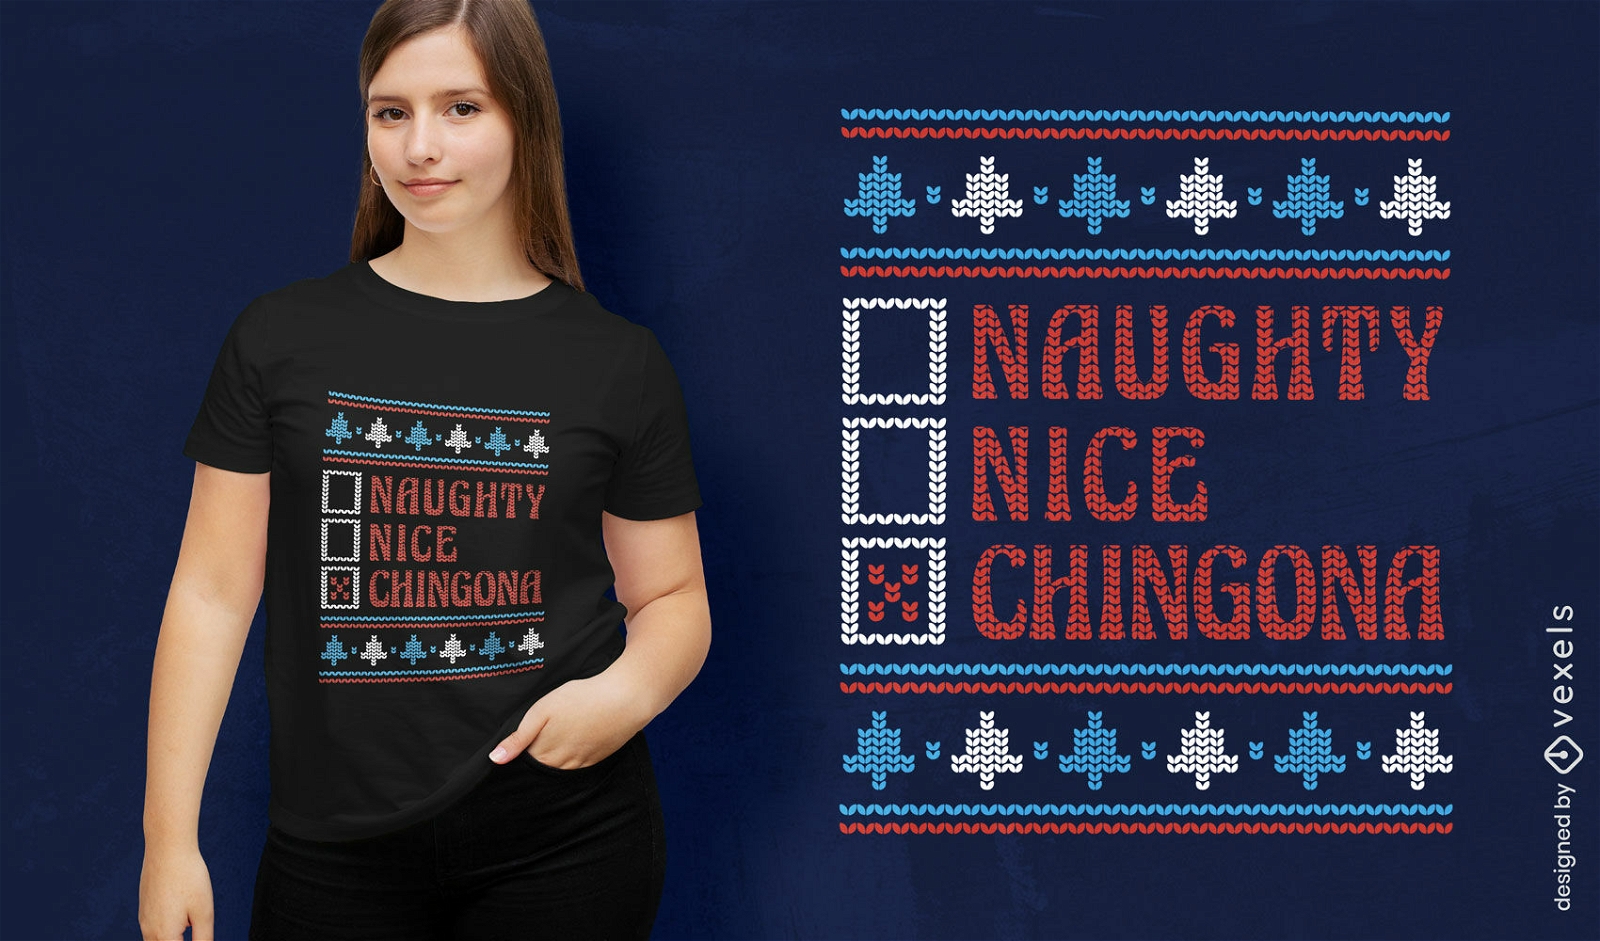 Chingona h?ssliches Pullover-T-Shirt-Design